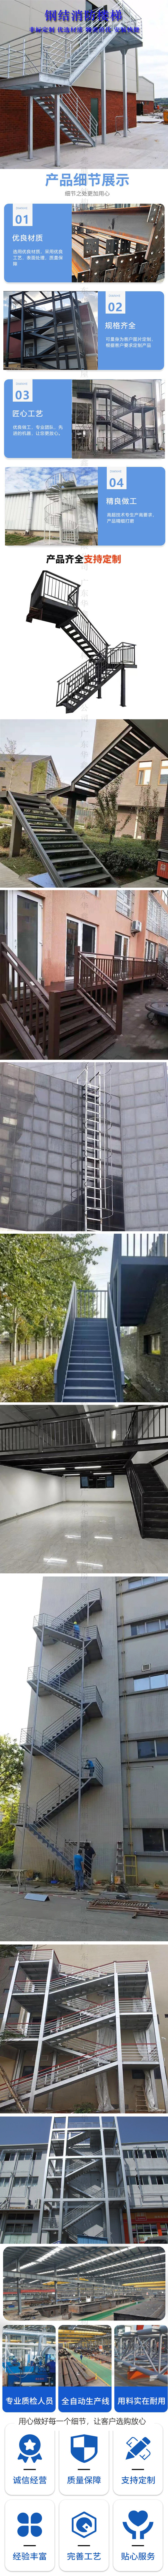 钢结构楼梯s.jpg